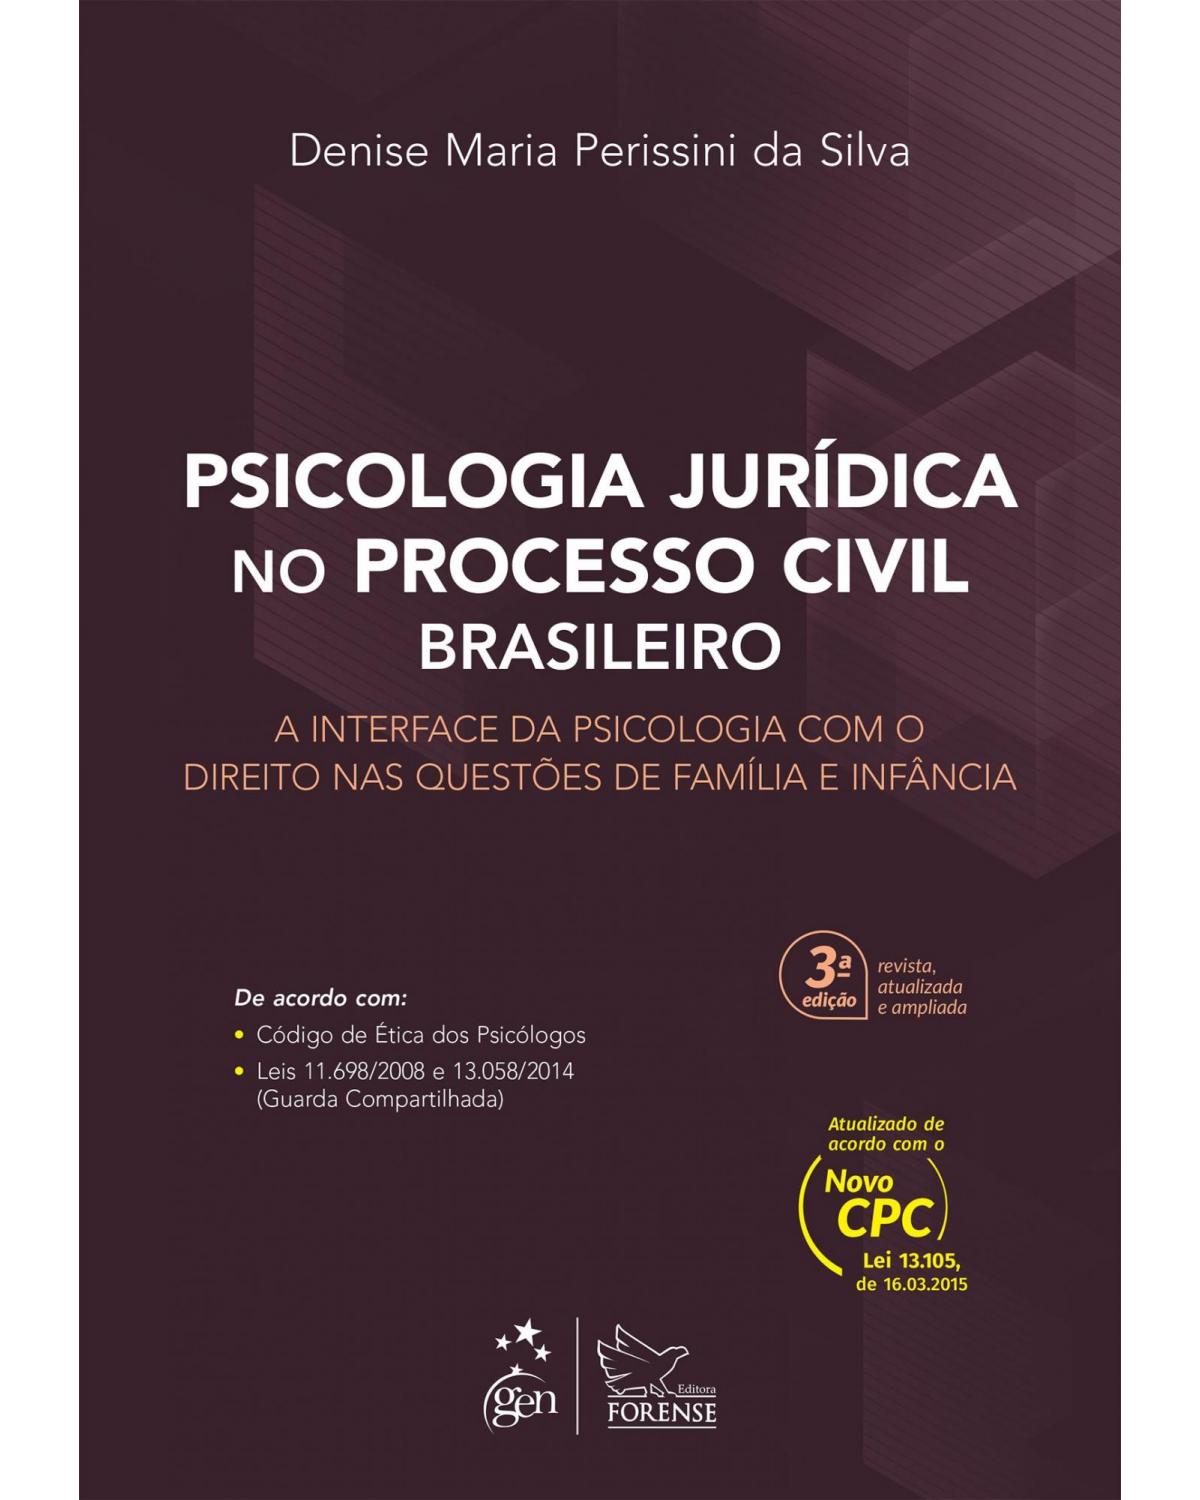 Psicologia jurídica no processo civil brasileiro - A interface da psicologia com o direito nas questões de família e infância - 3ª Edição | 2016